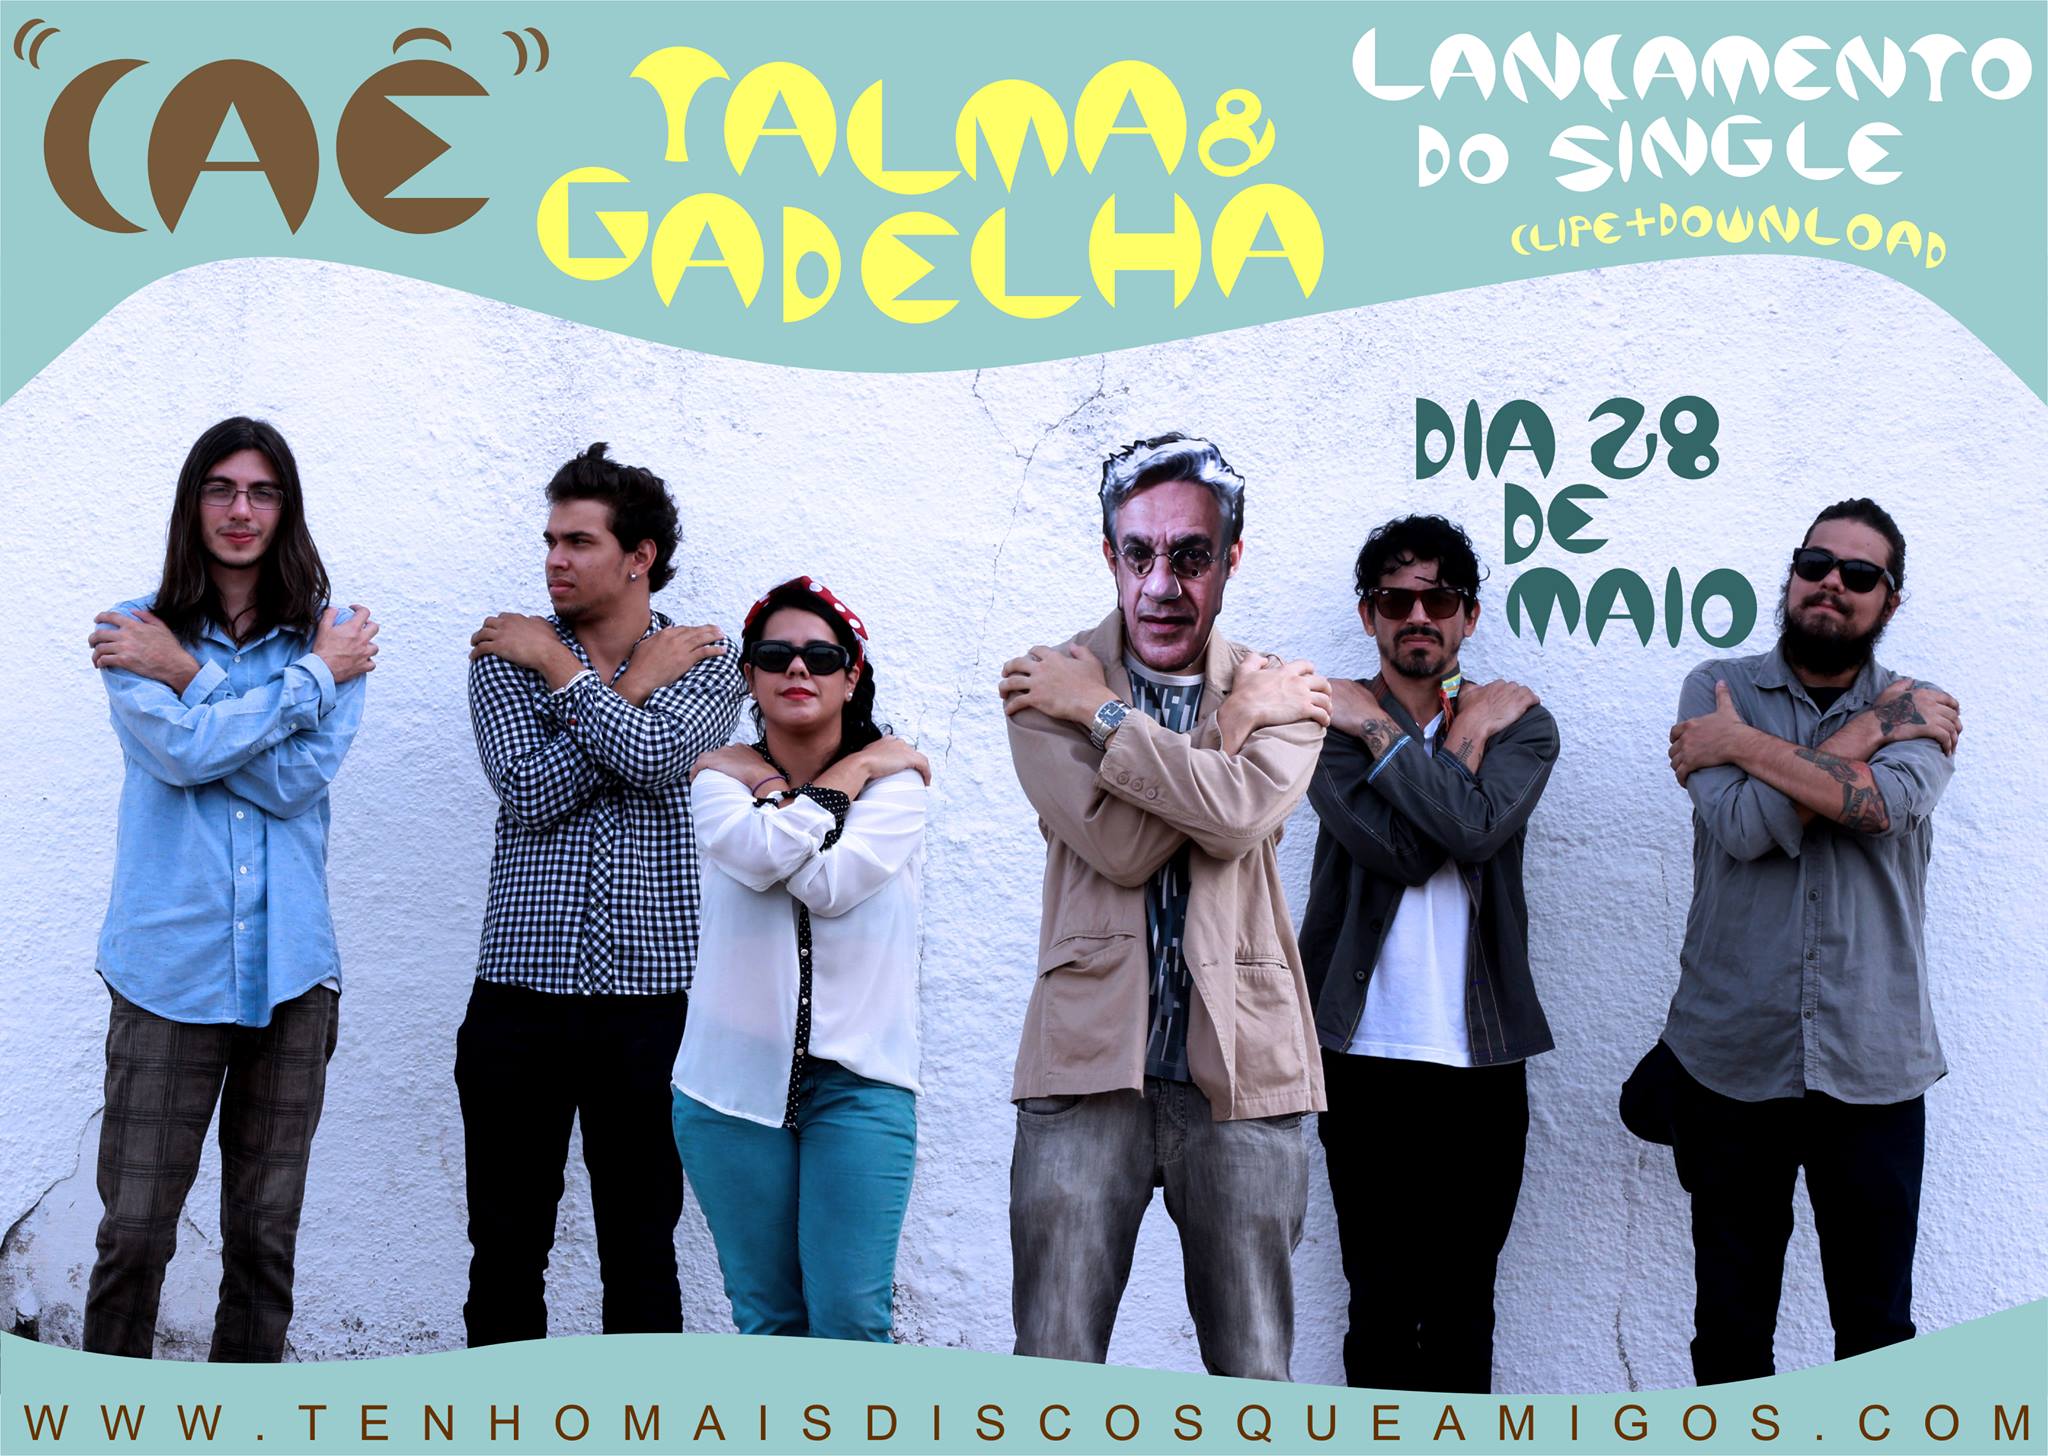 Exclusivo: Talma&Gadelha - "Caê" (single e vídeo) + entrevista